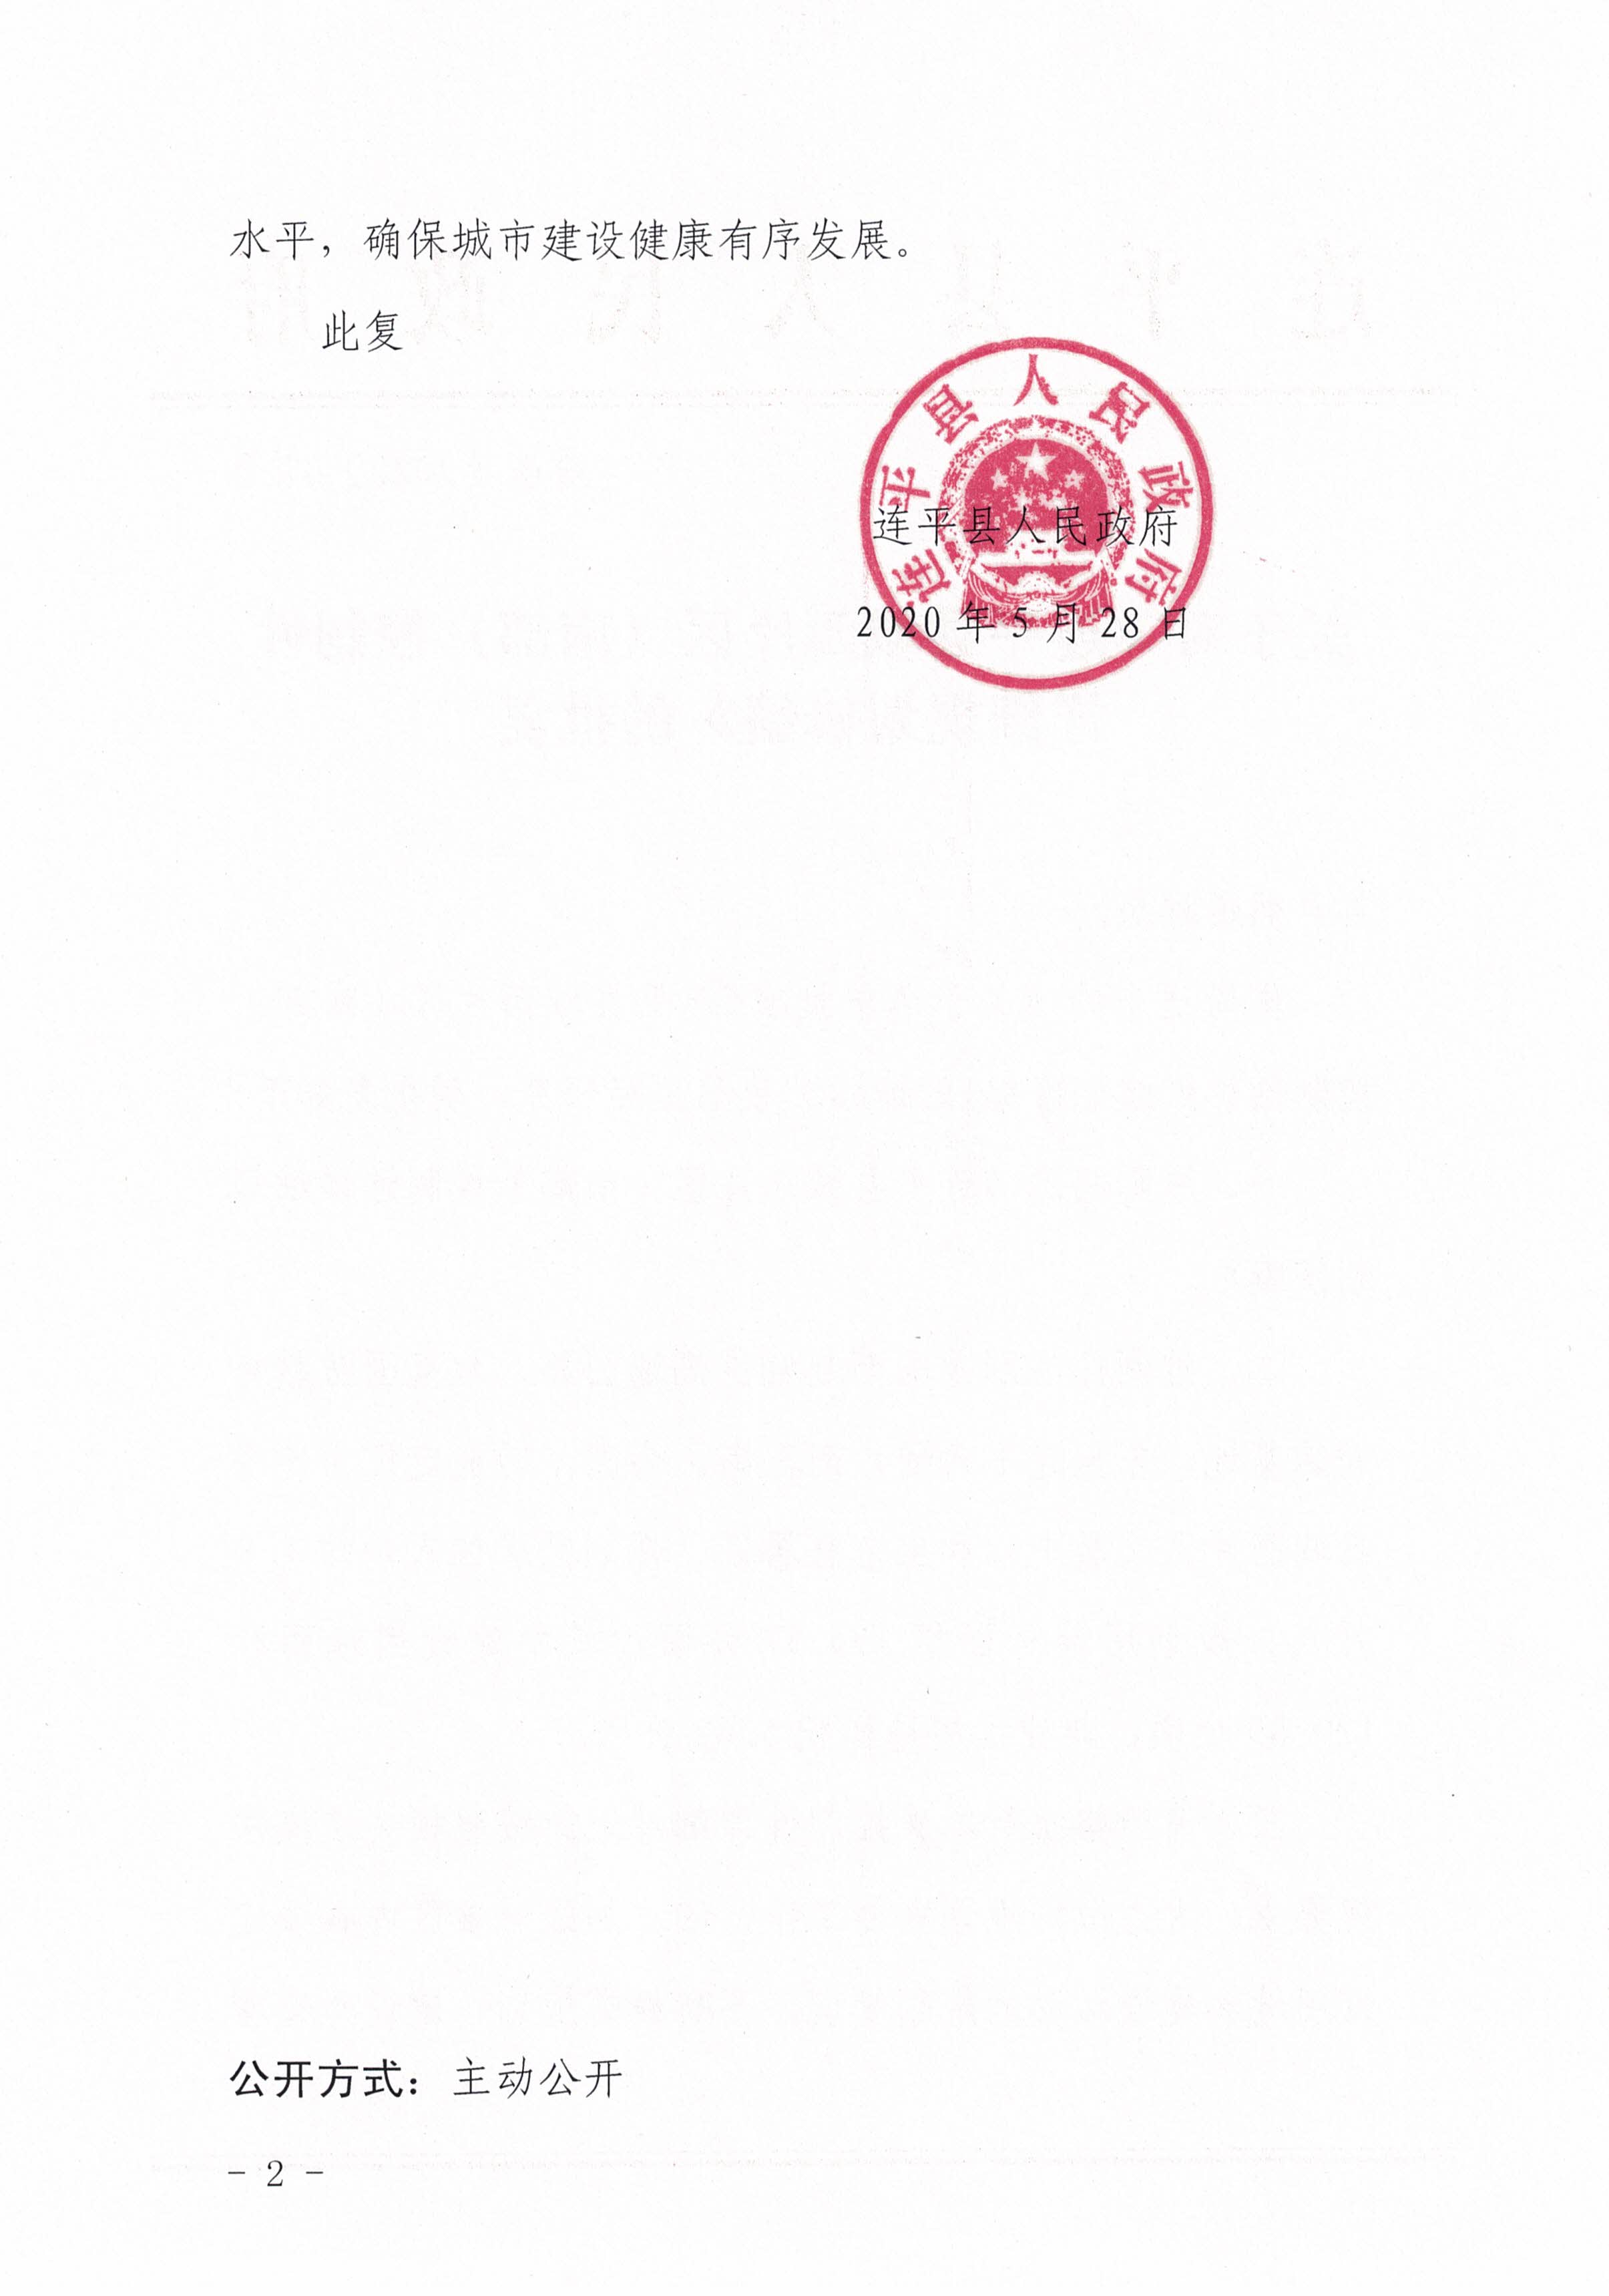 连平县城西片区（南部）控制性详细规划批后公告_页面_03.jpg